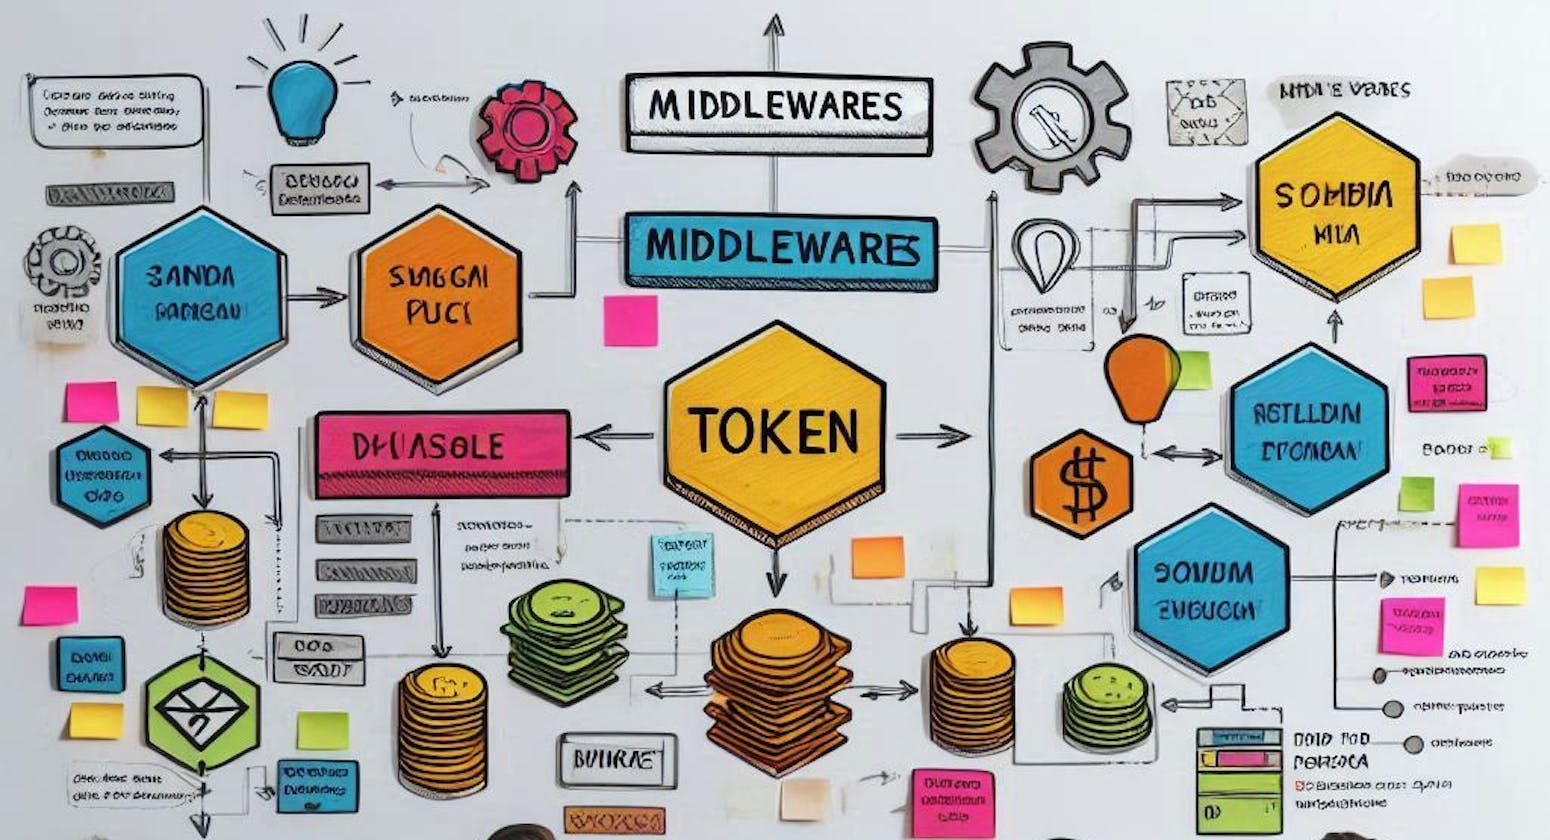 Understanding Middlewares and Tokens in Web Development